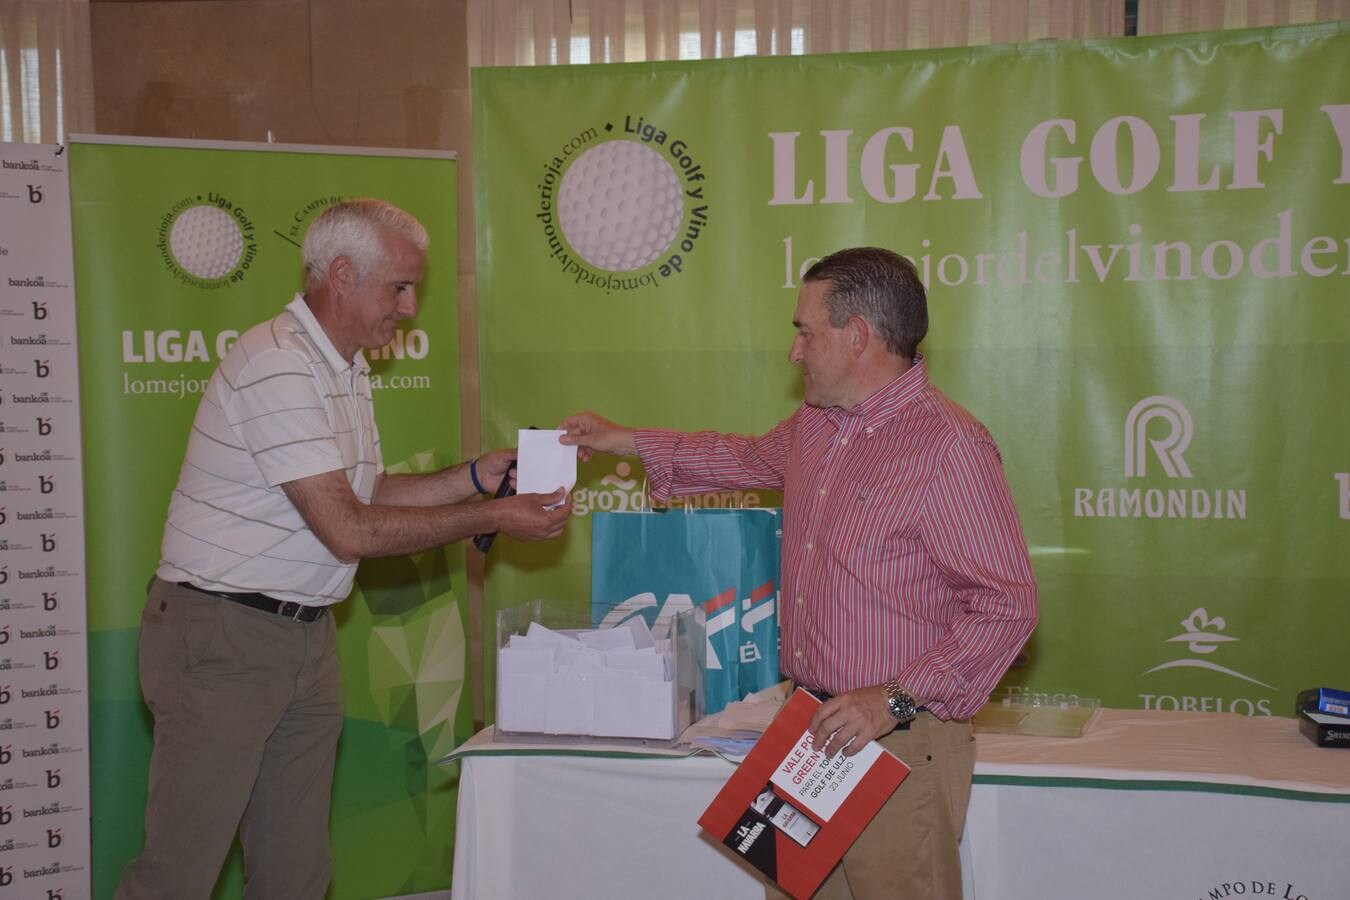 Los ganadores recibieron sus premios de manos de los patrocinadores.